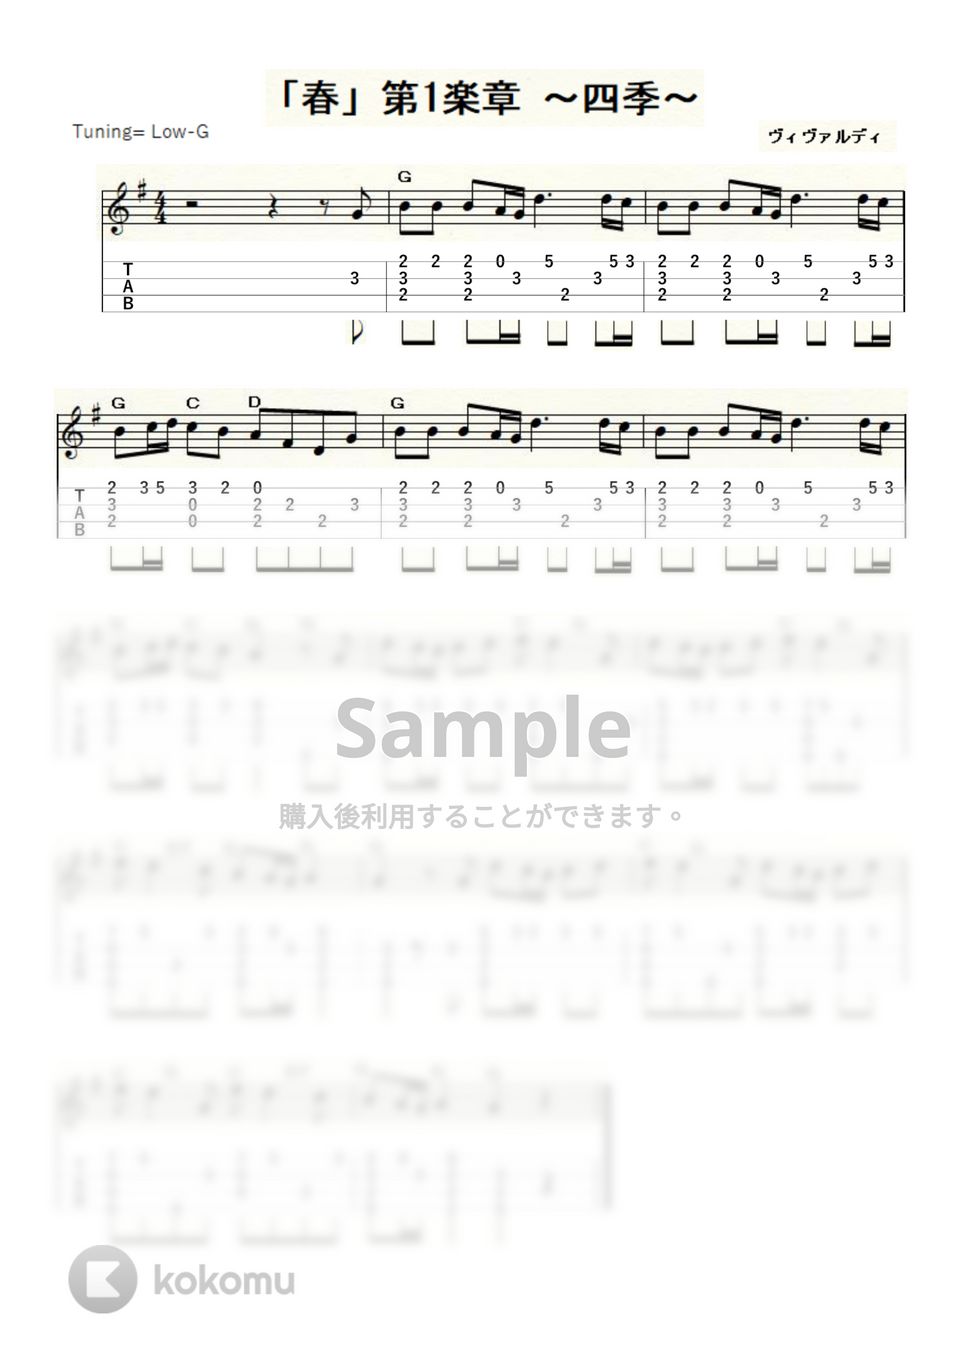 ヴィヴァルディ - 「春」第1楽章 ～四季～ (ｳｸﾚﾚｿﾛ / Low-G / 中級) by ukulelepapa